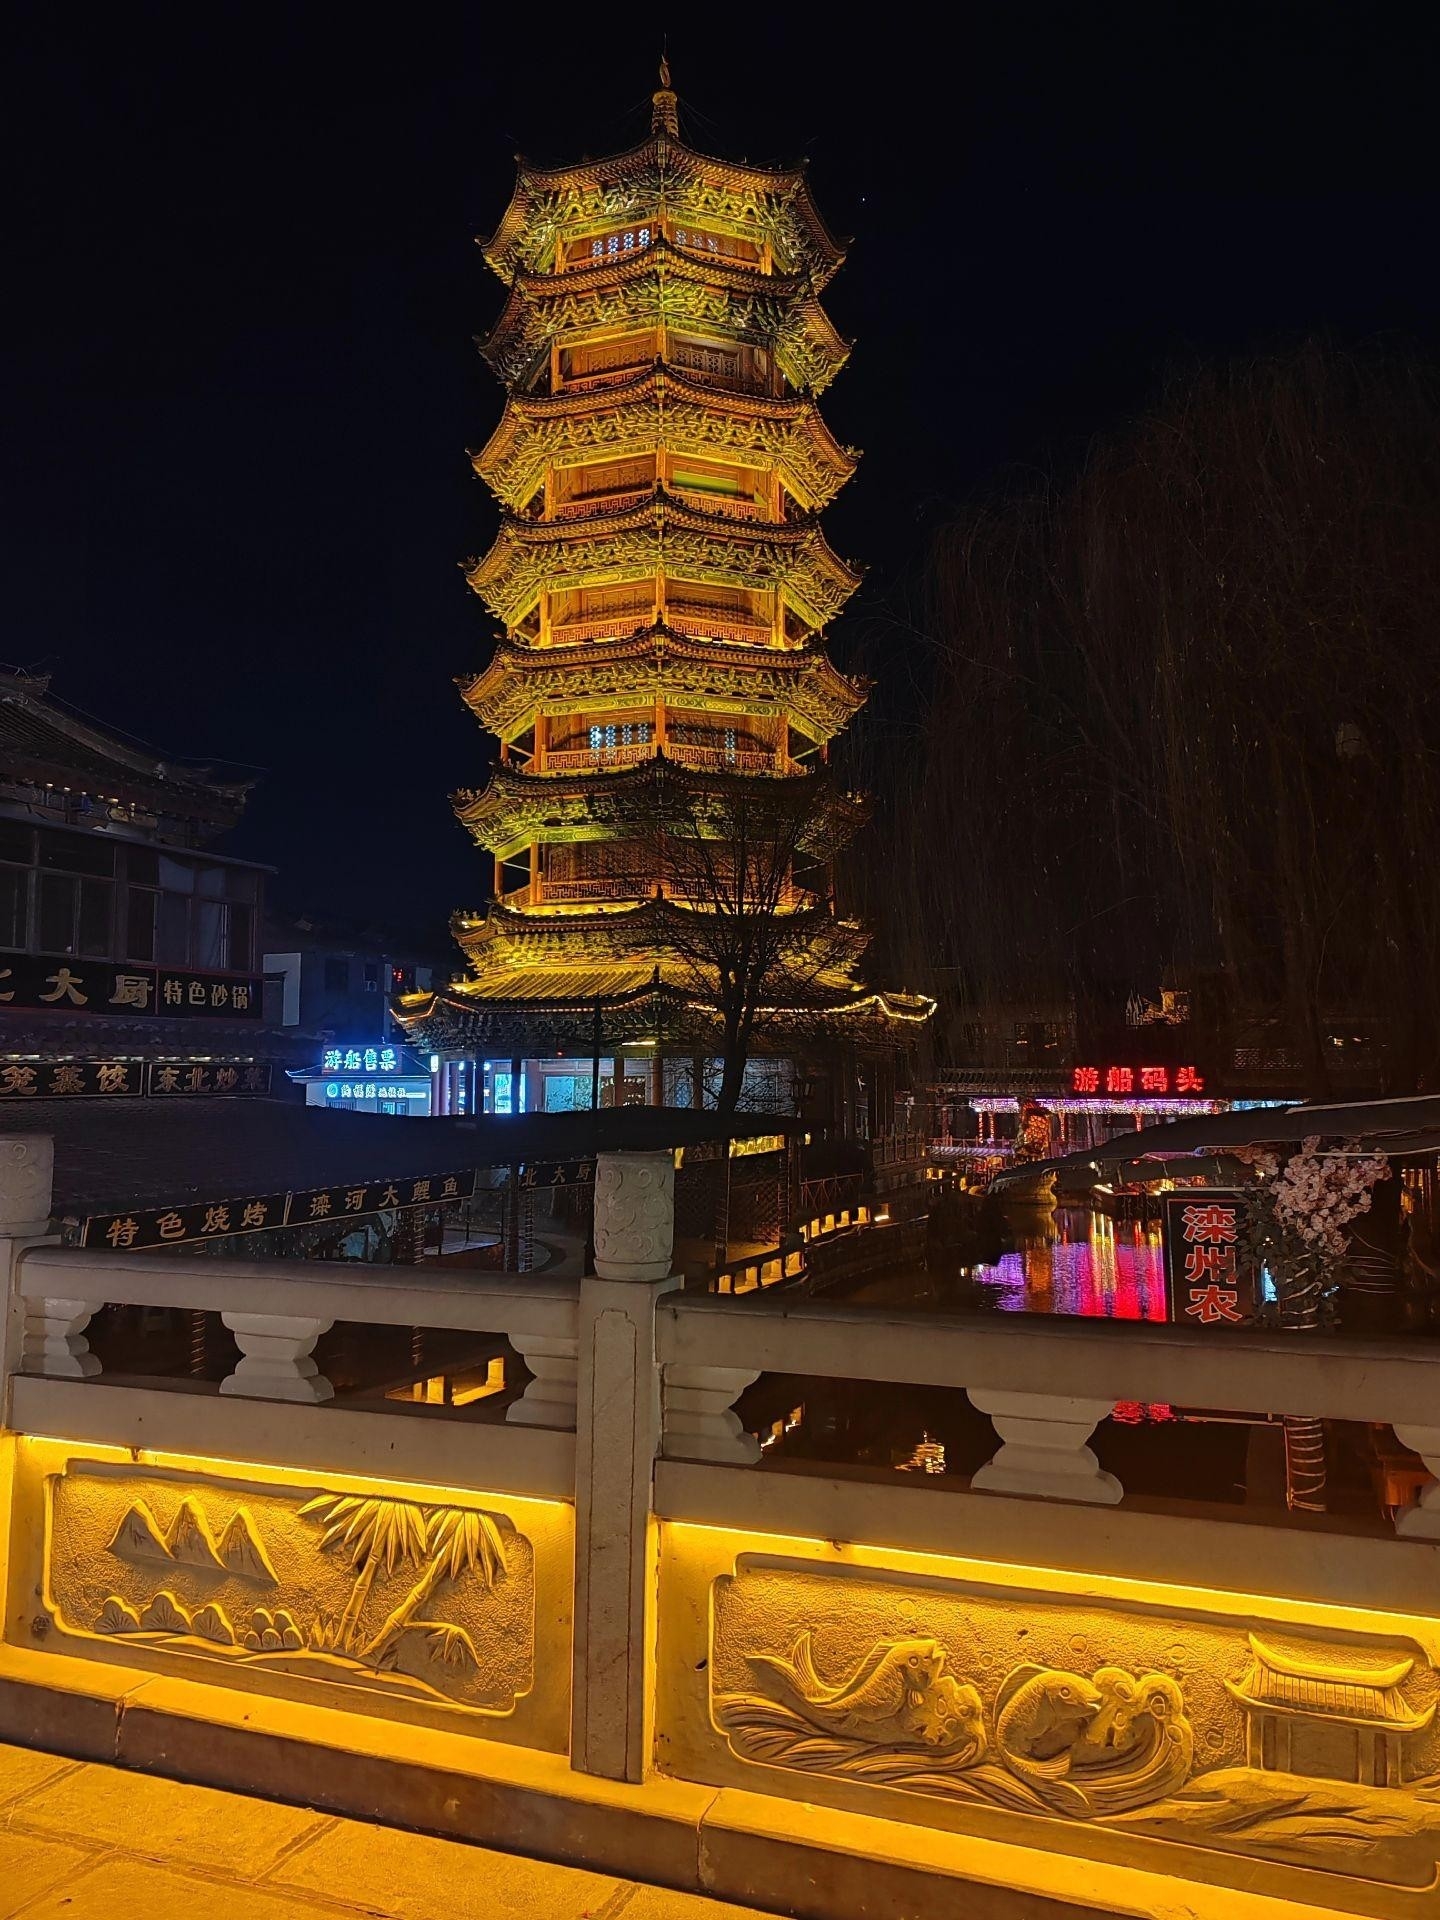 滦州古城坐落于滦州市古城街道，占地888亩，青龙河水系环绕，呈现出一座北方民俗博物馆的繁荣景象。古城